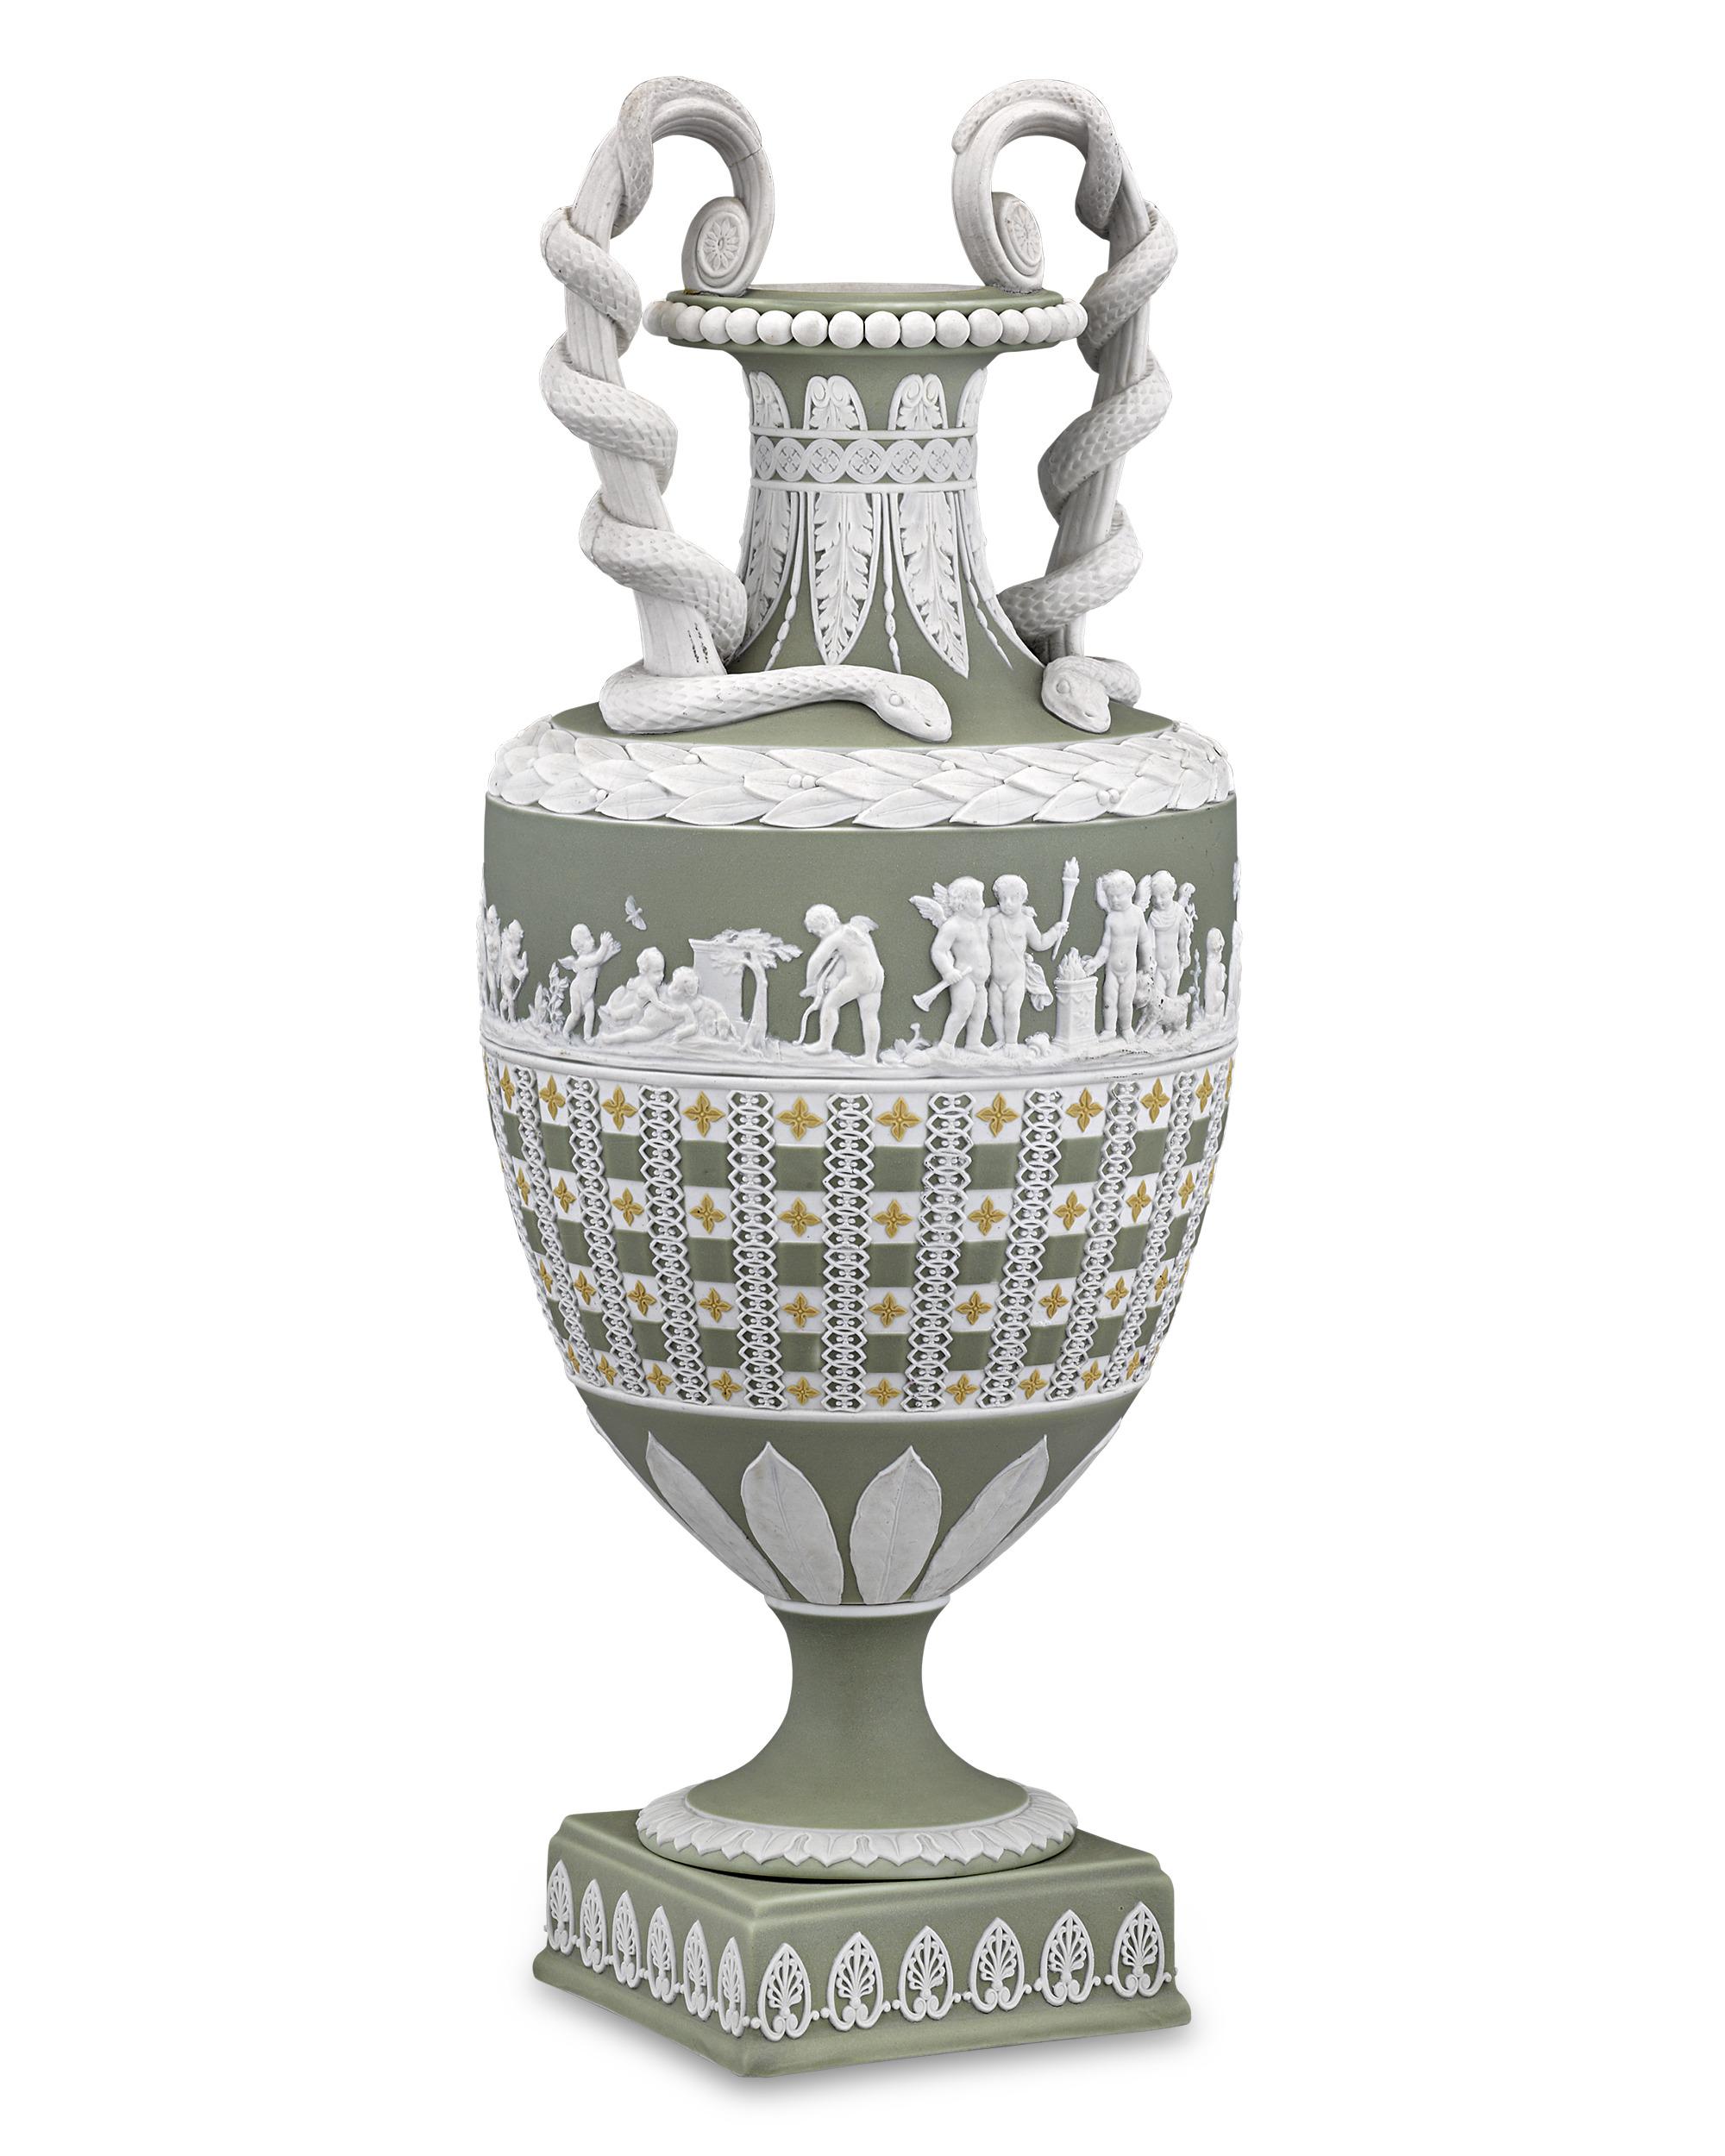 Die dreifarbige Jaspisware war eine der berühmtesten Innovationen von Wedgwood, und diese äußerst seltene Vase ist ein außergewöhnliches Beispiel für diese wundersame Technik. Der hohe Hals der anmutigen Amphorenform wird von aufrechten, mit